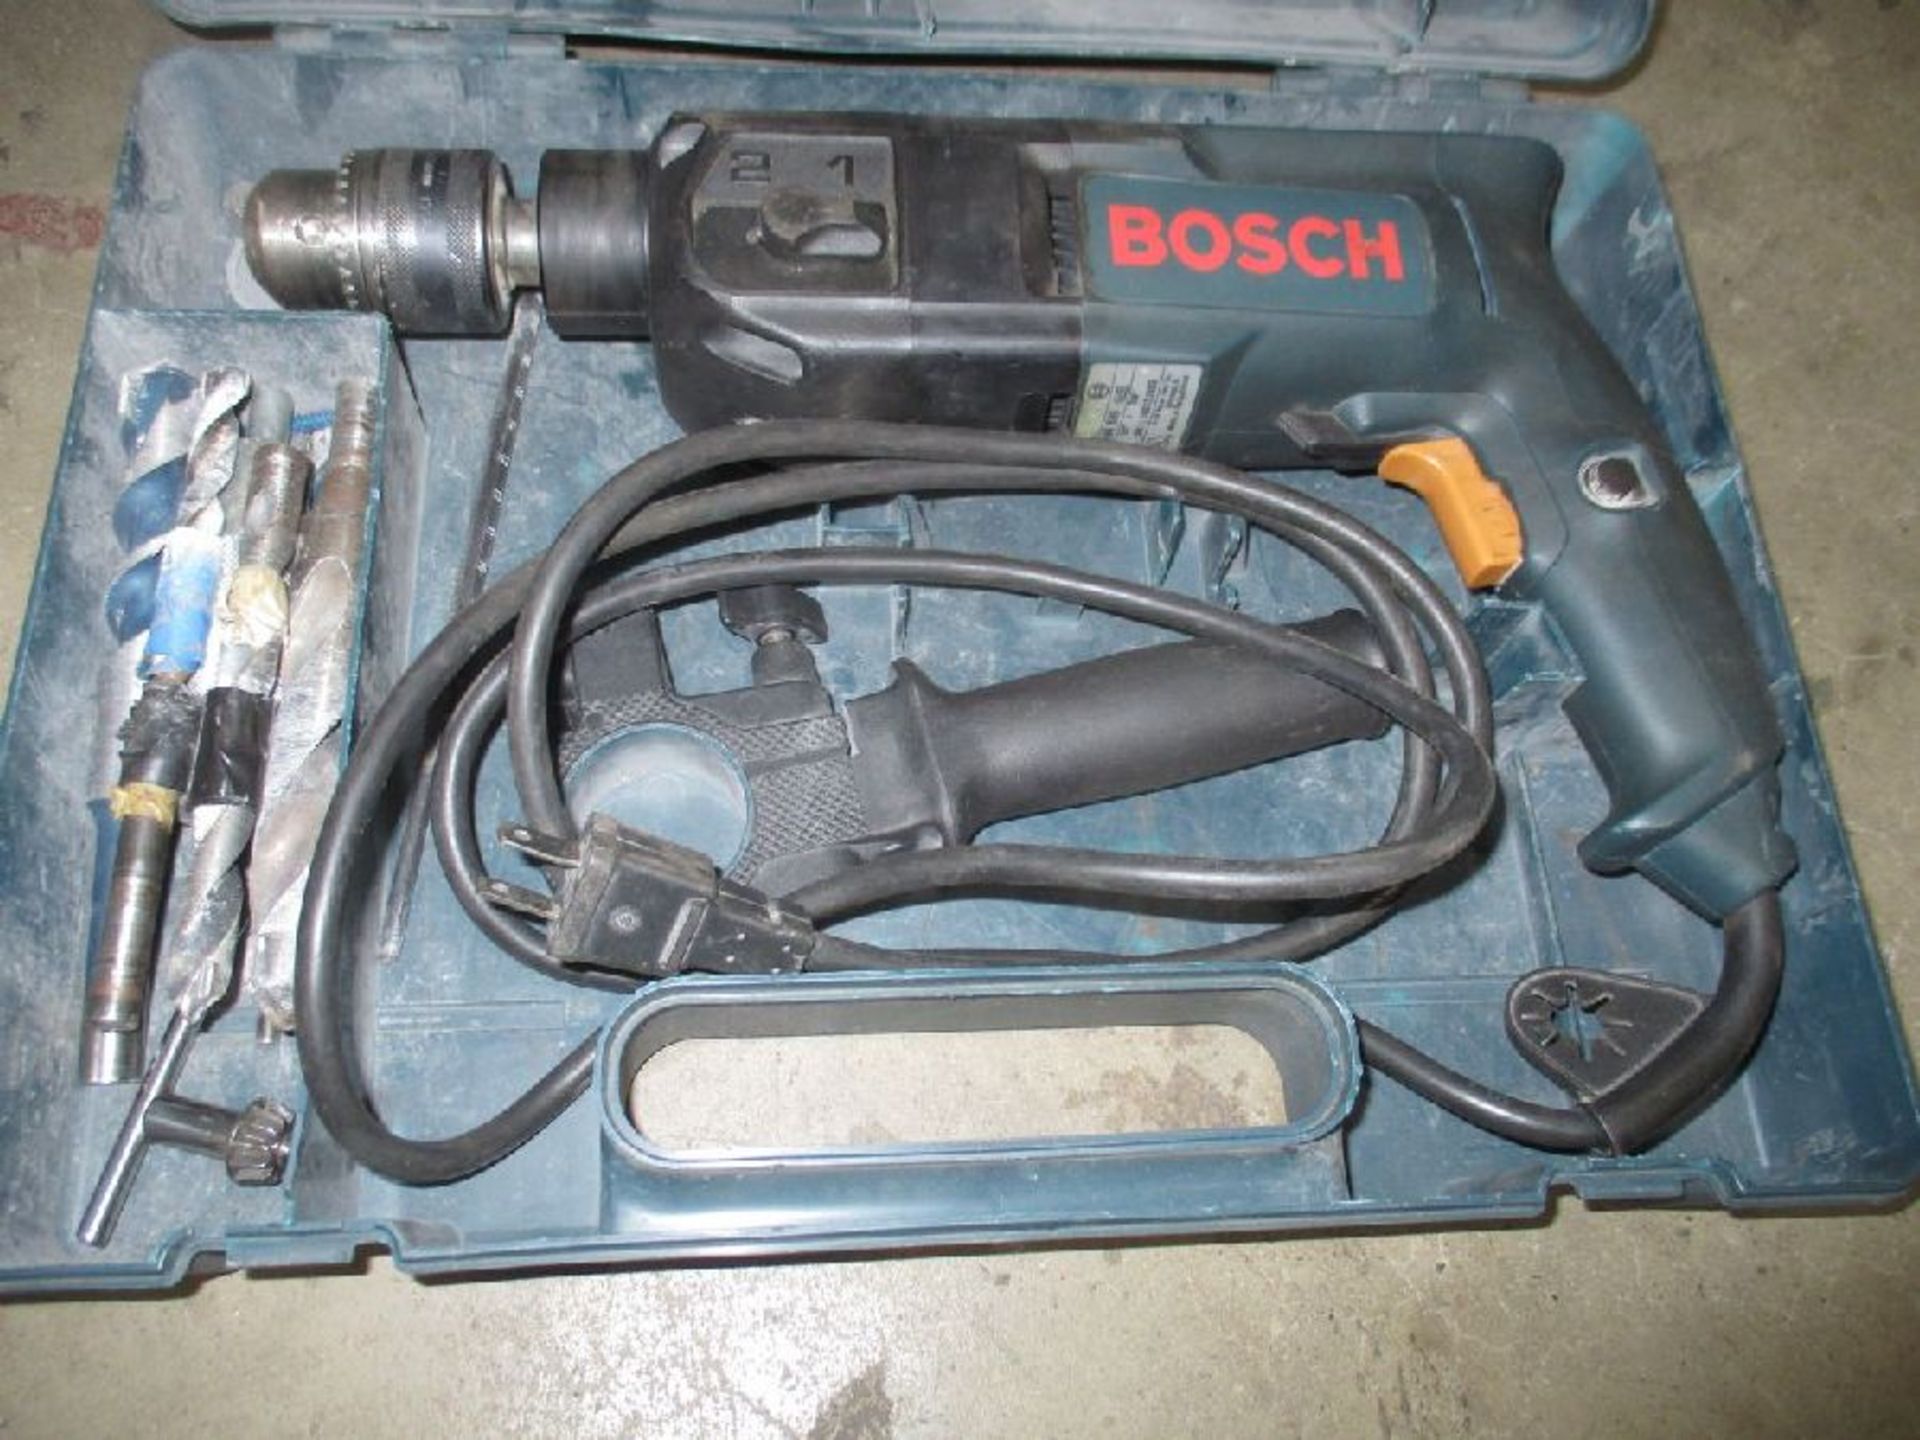 Bosch Model 0 601 194 639 Rotary Hammer Drill